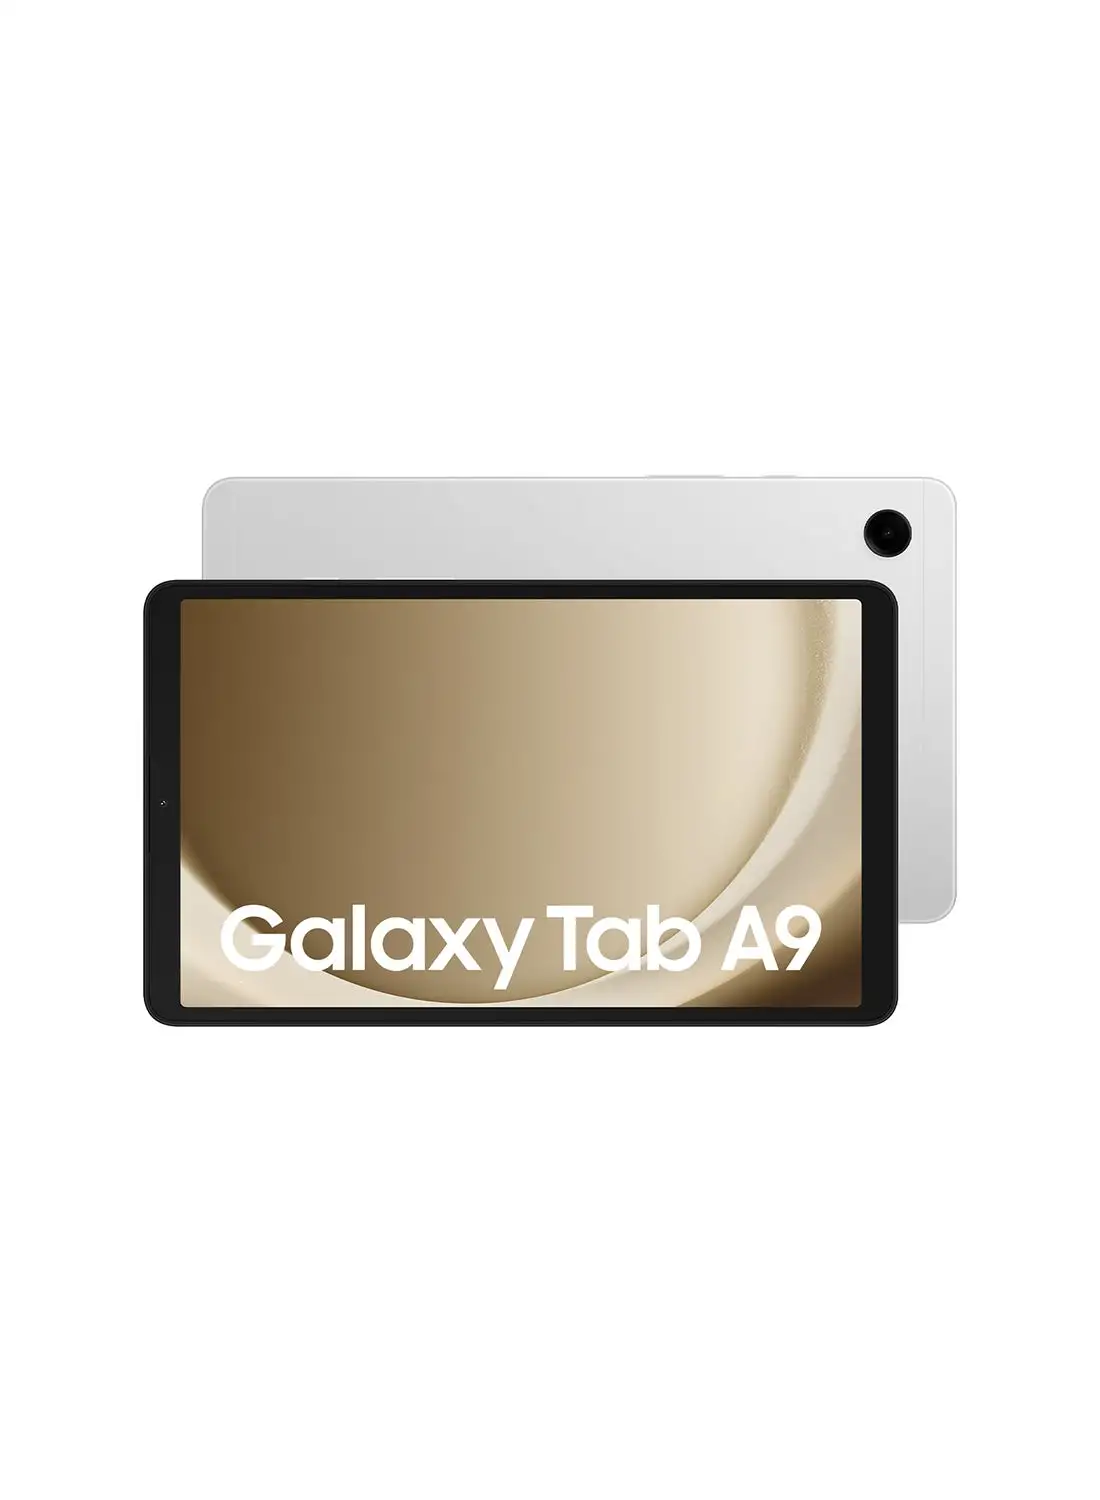 Samsung Galaxy Tab A9 Silver 4GB RAM 64GB Wifi - Middle East Version